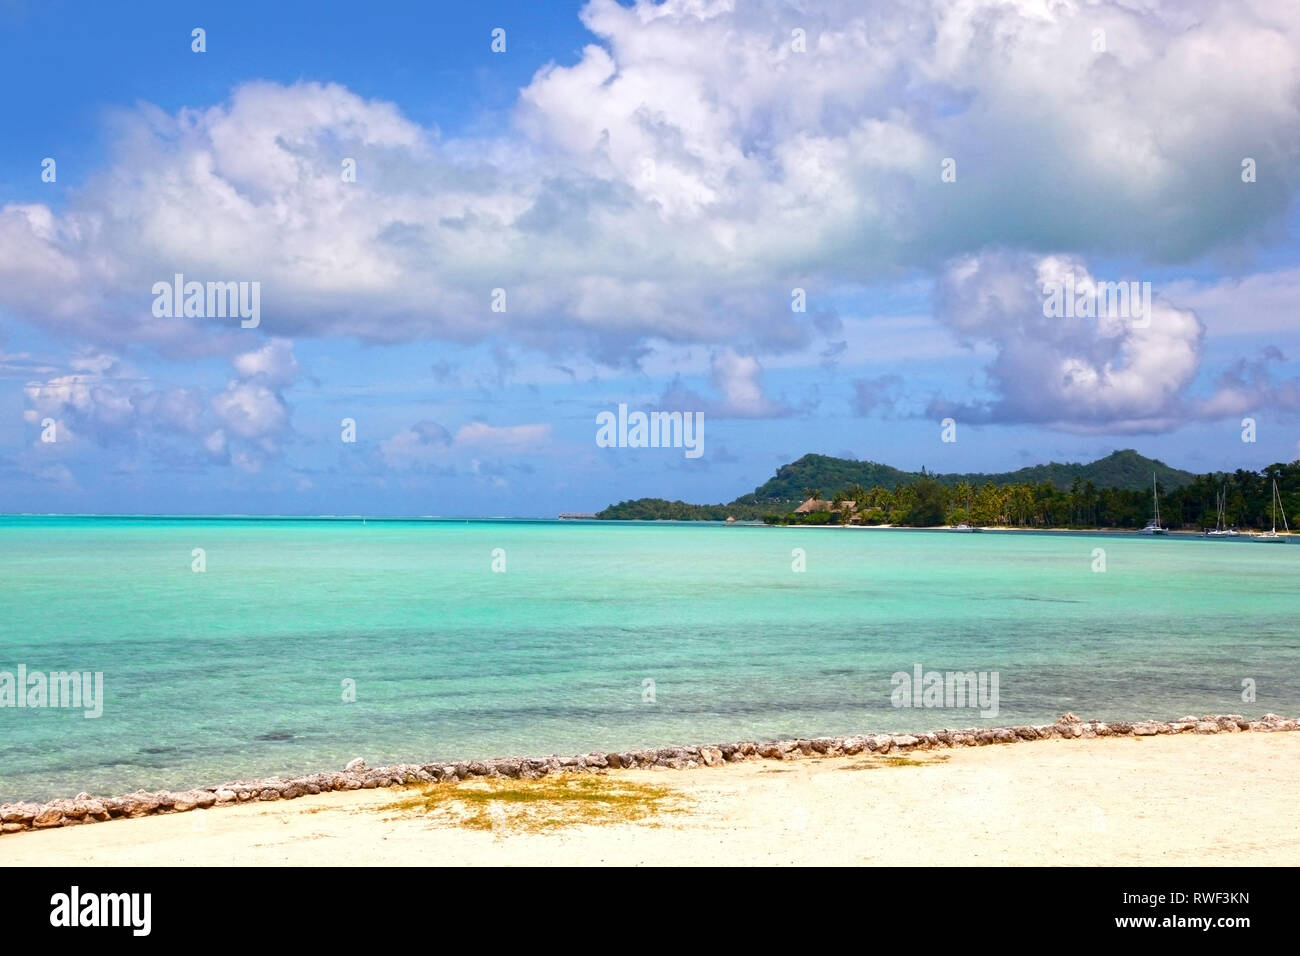 Bellissimo paesaggio con la spiaggia e le isole in background, Bora Bora, Polinesia francese. Foto Stock